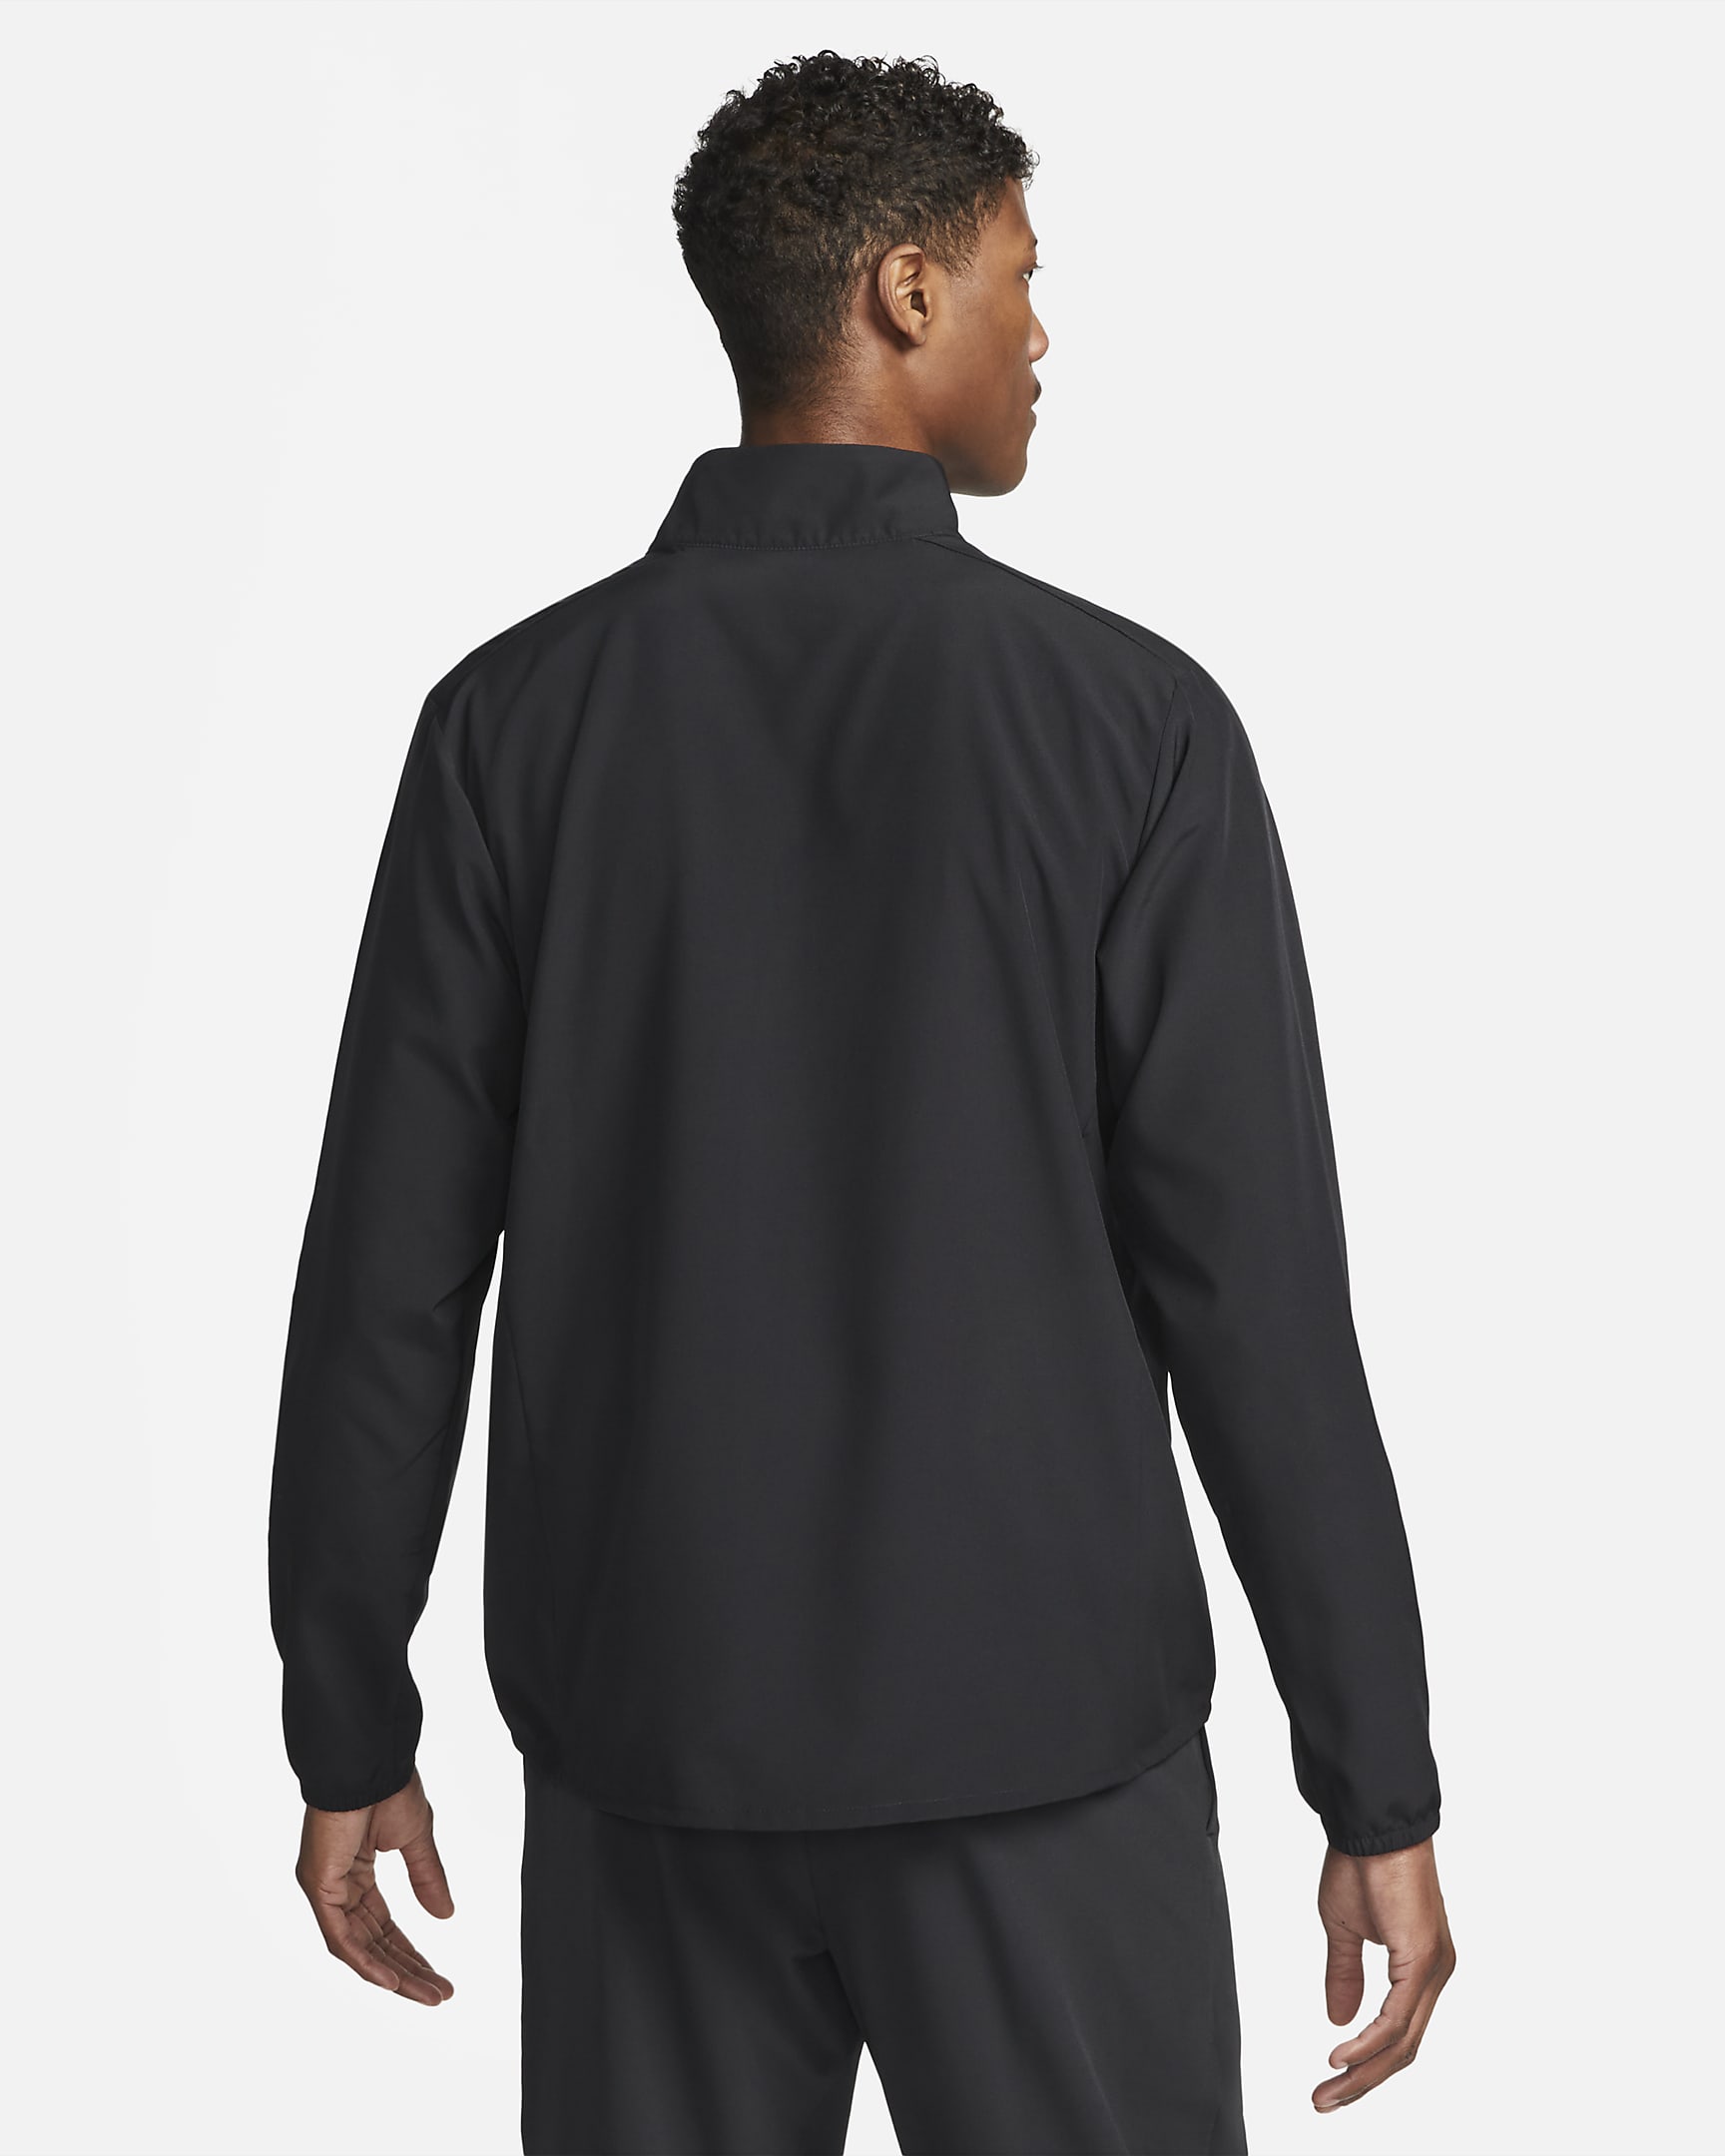 Nike Form Men's Dri-FIT Versatile Jacket. Nike SE